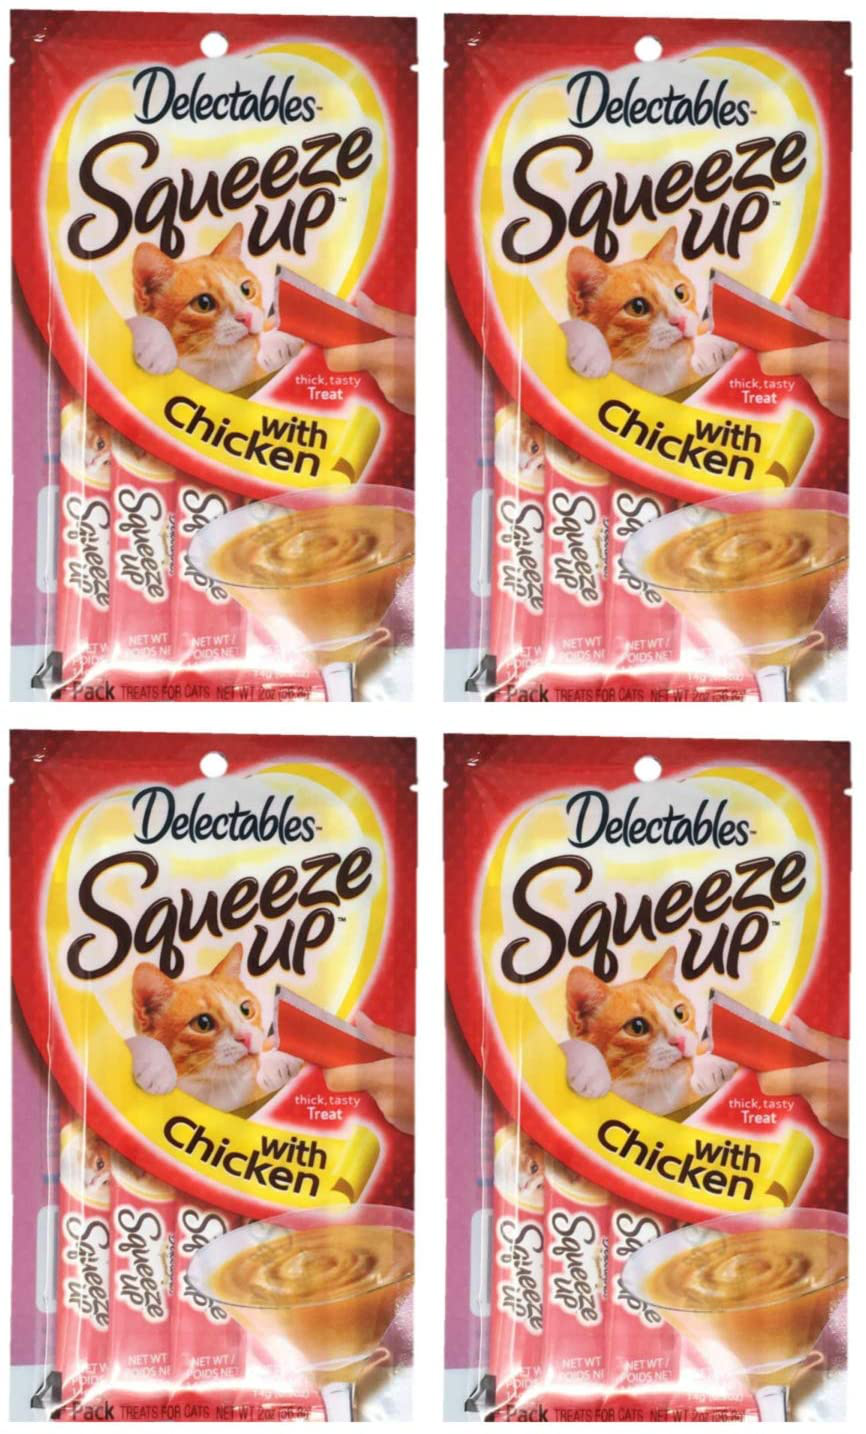 Delectables Squeeze up Hartz Cat Treats Bundle of 4 Flavor Pouches, 2.0 Oz Each (Chicken)